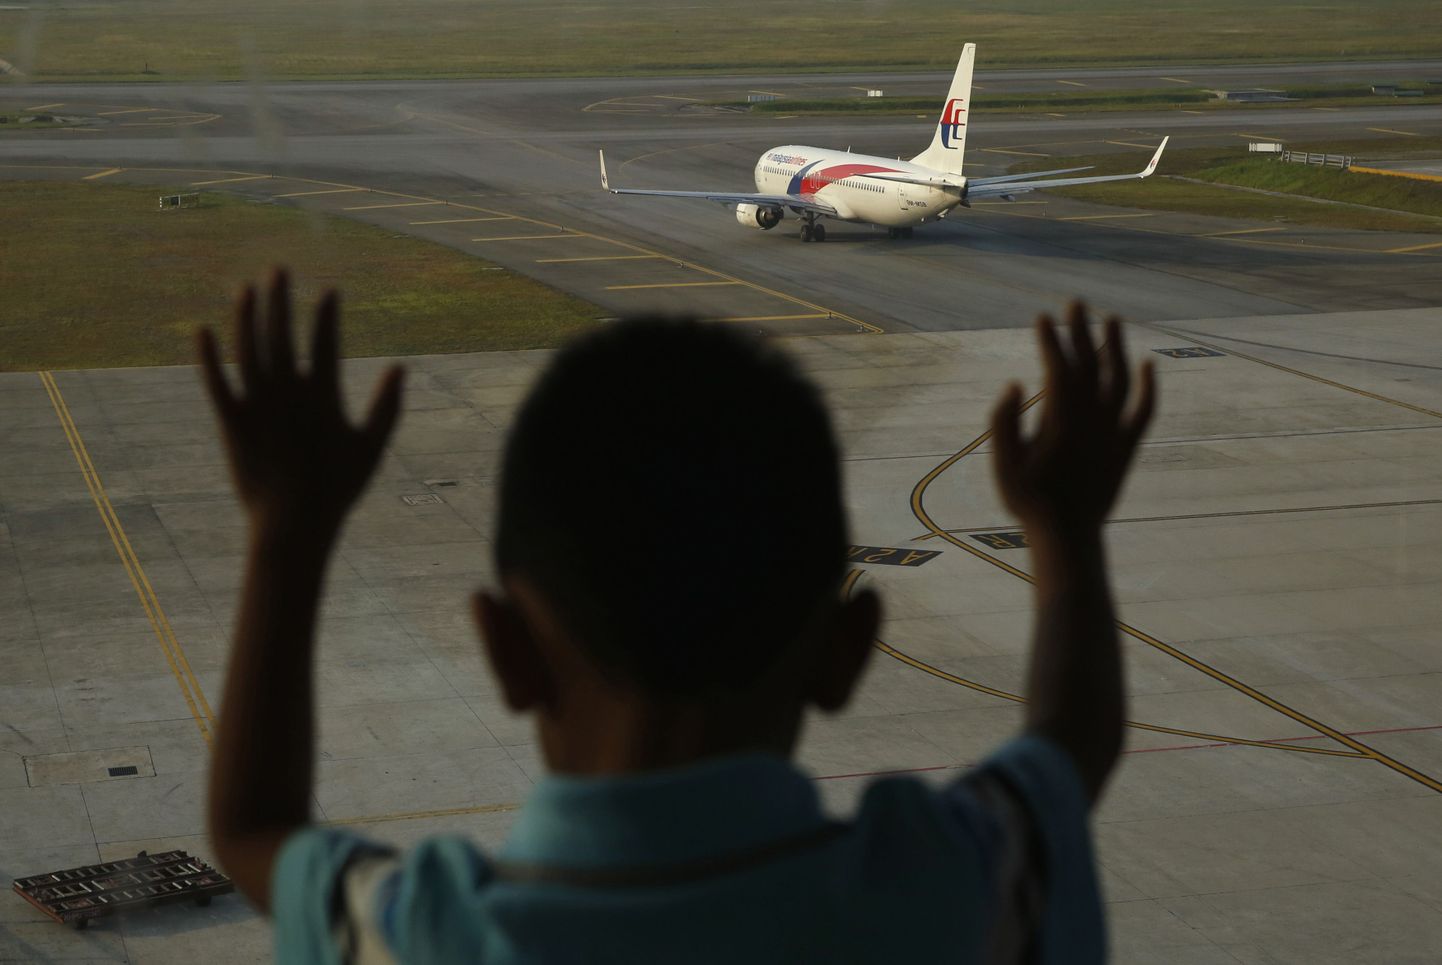 Väike poiss Kuala Lumpuri lennuväljal, mis oli Ukrainas alla lastud lennud MH17 sihtkohaks.